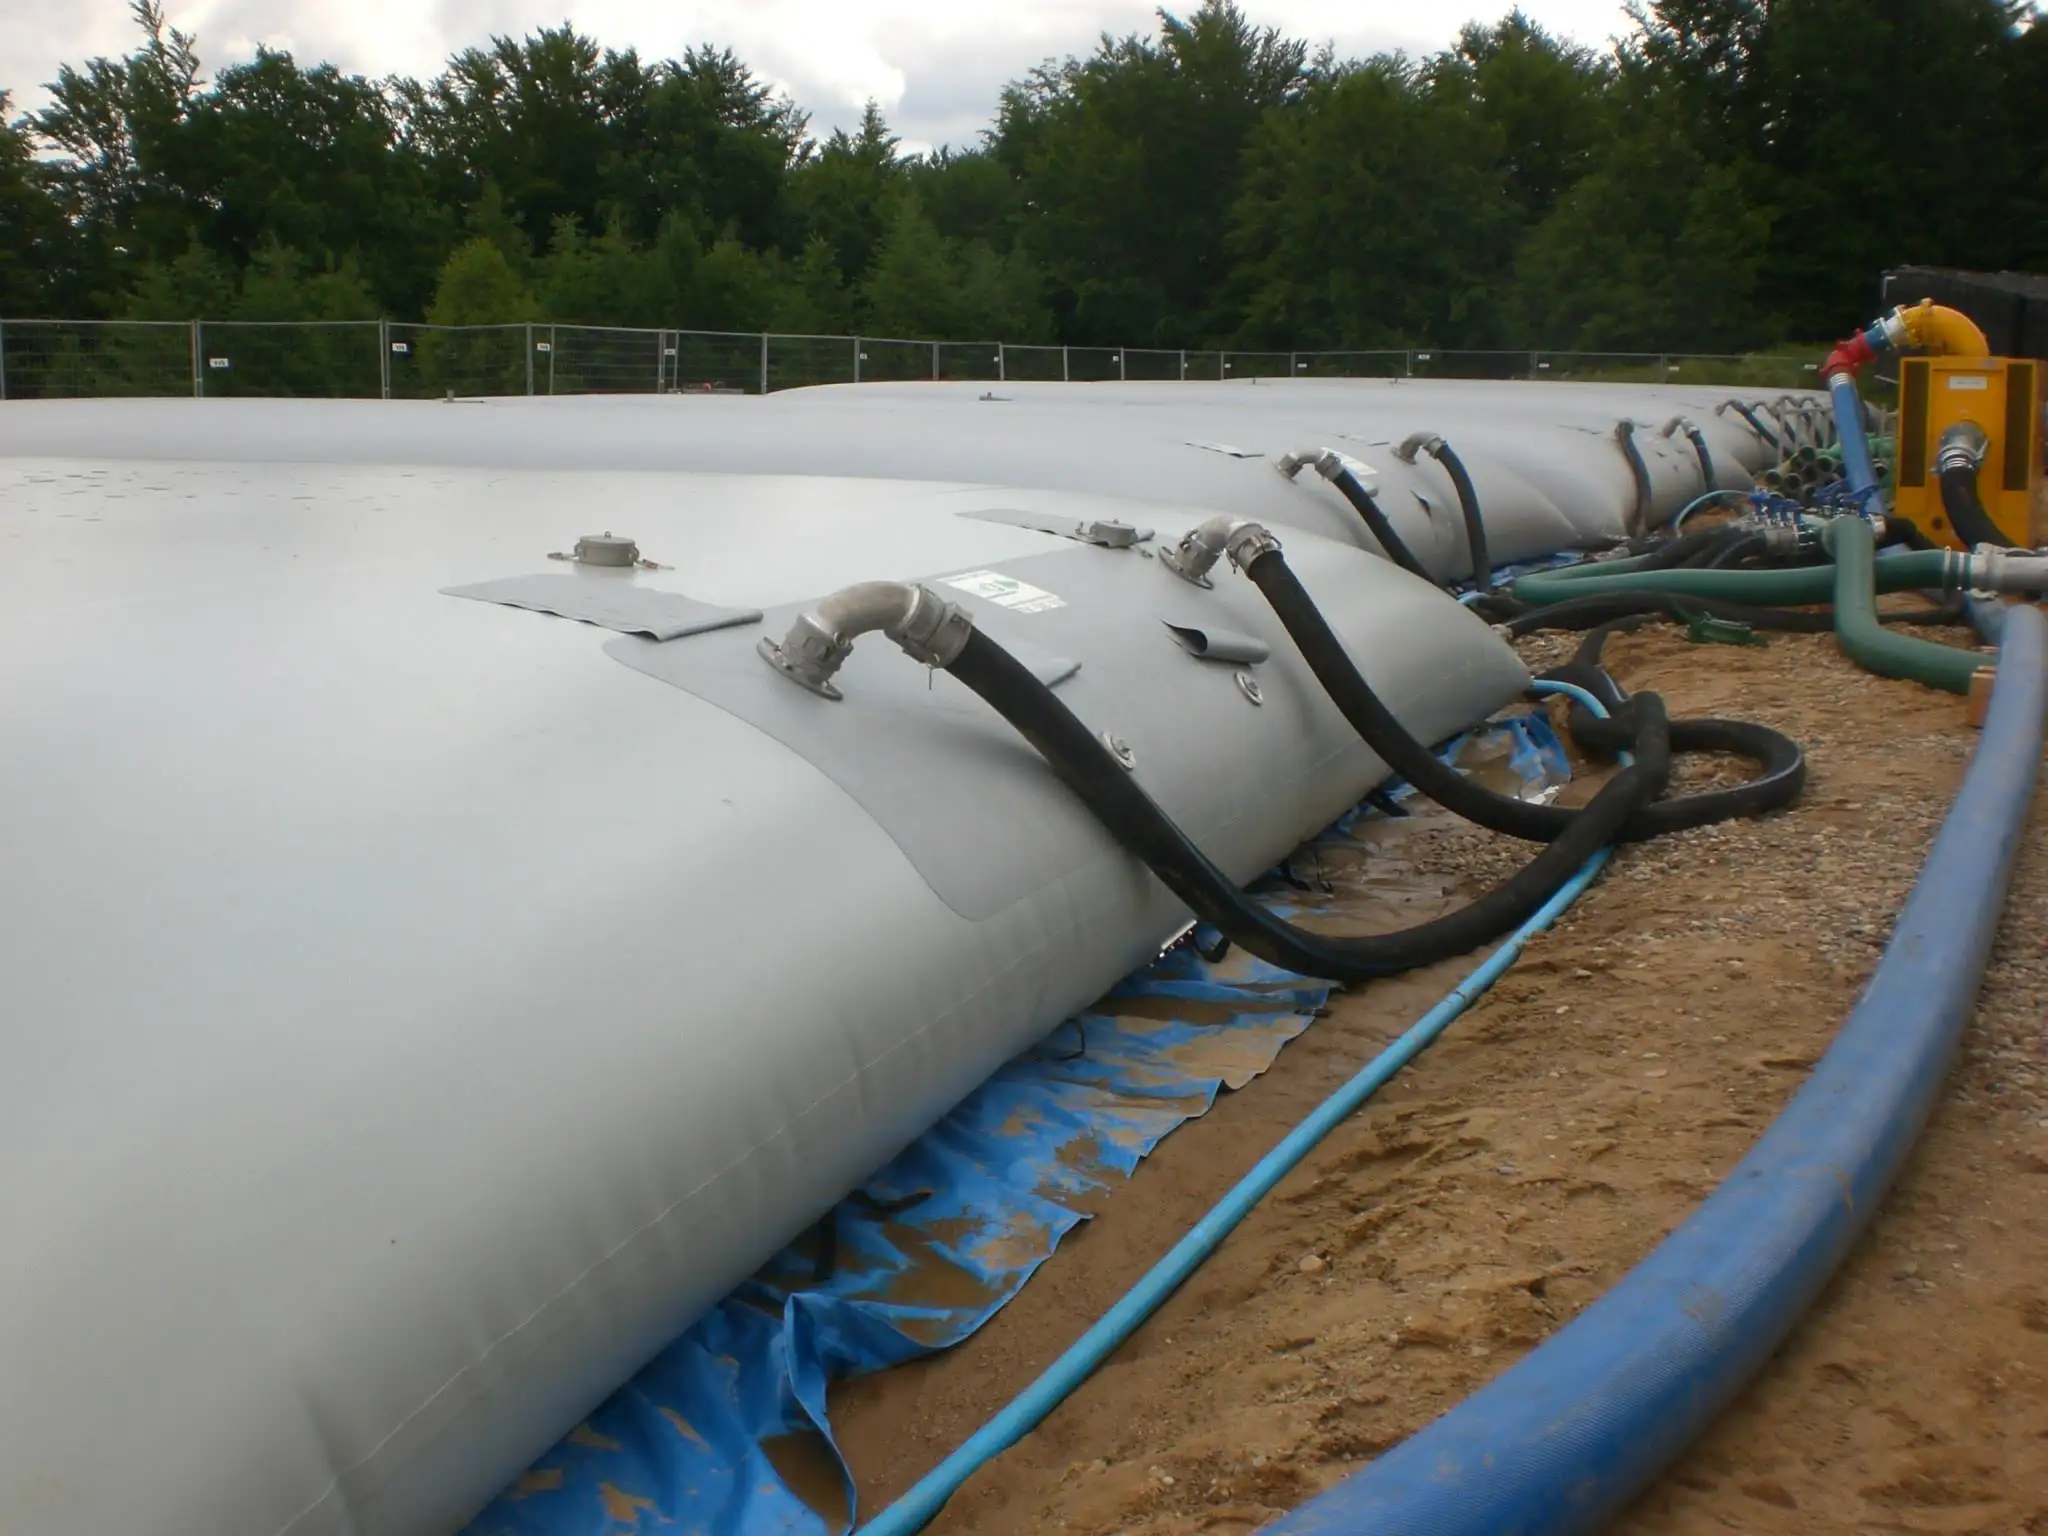 1000L-50000L Collapsible Rainwater Harvesting Bags Water Tank